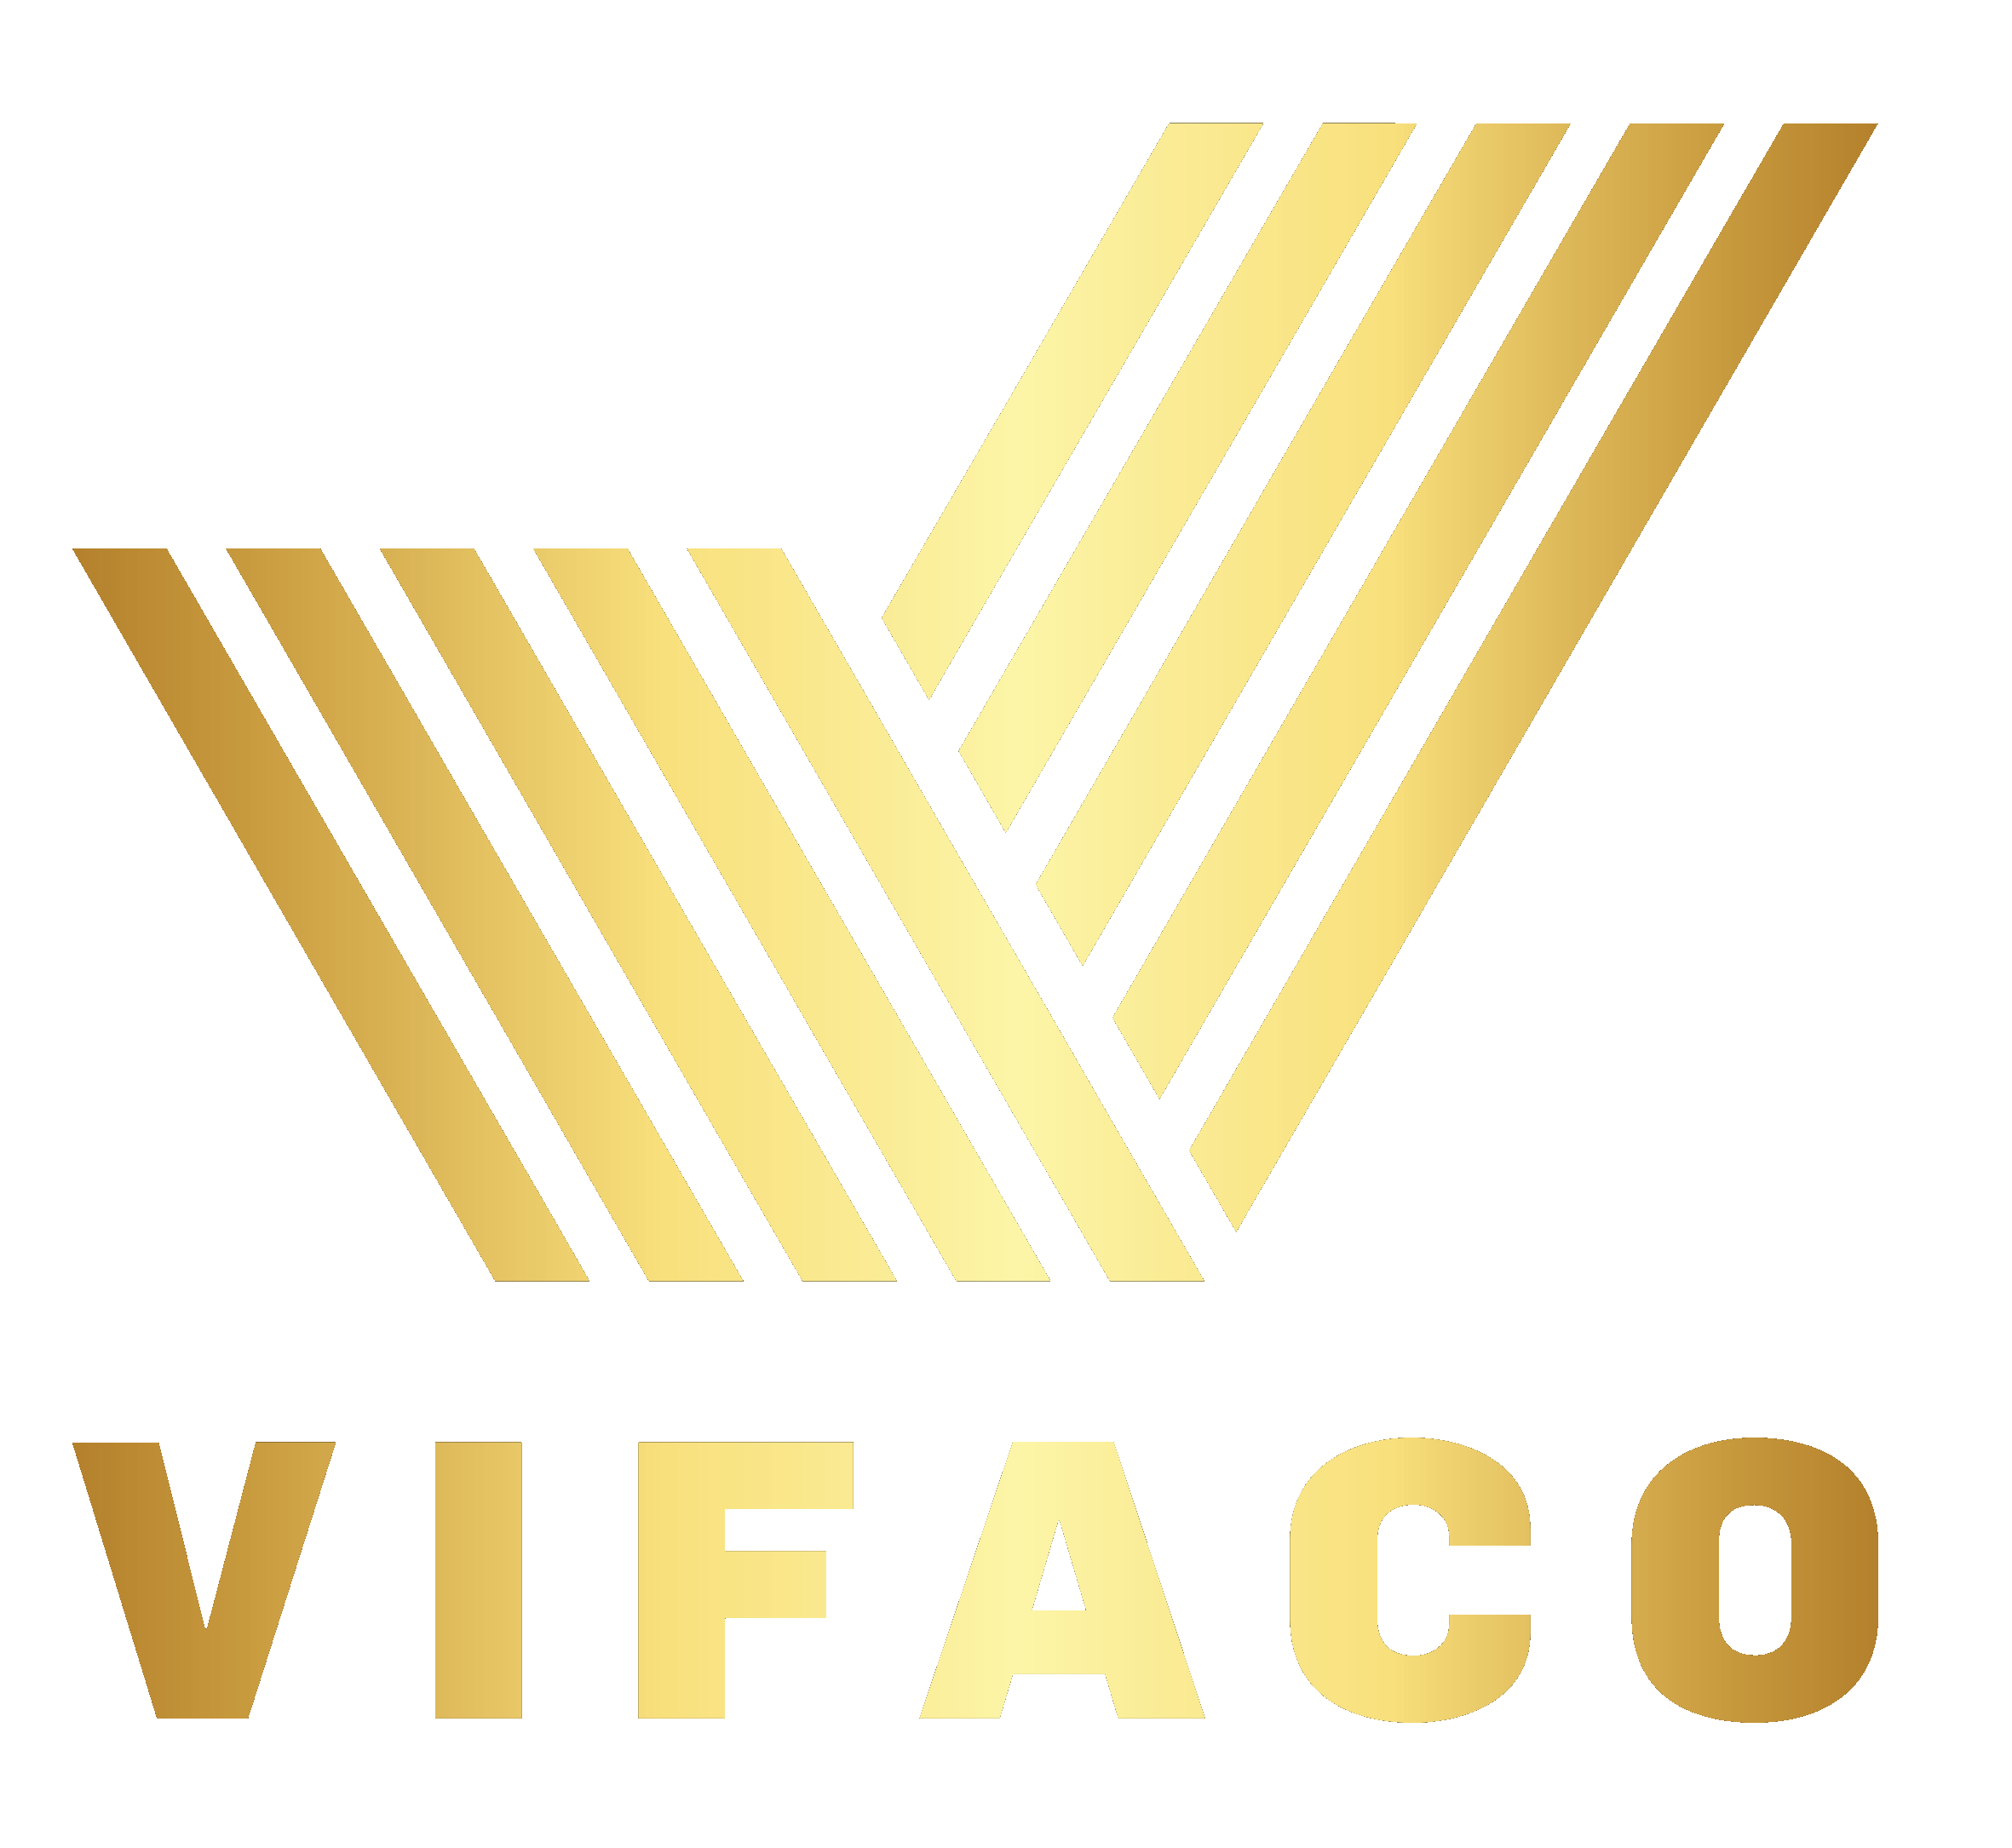 VIFACO JOINT STOCK COMPANY